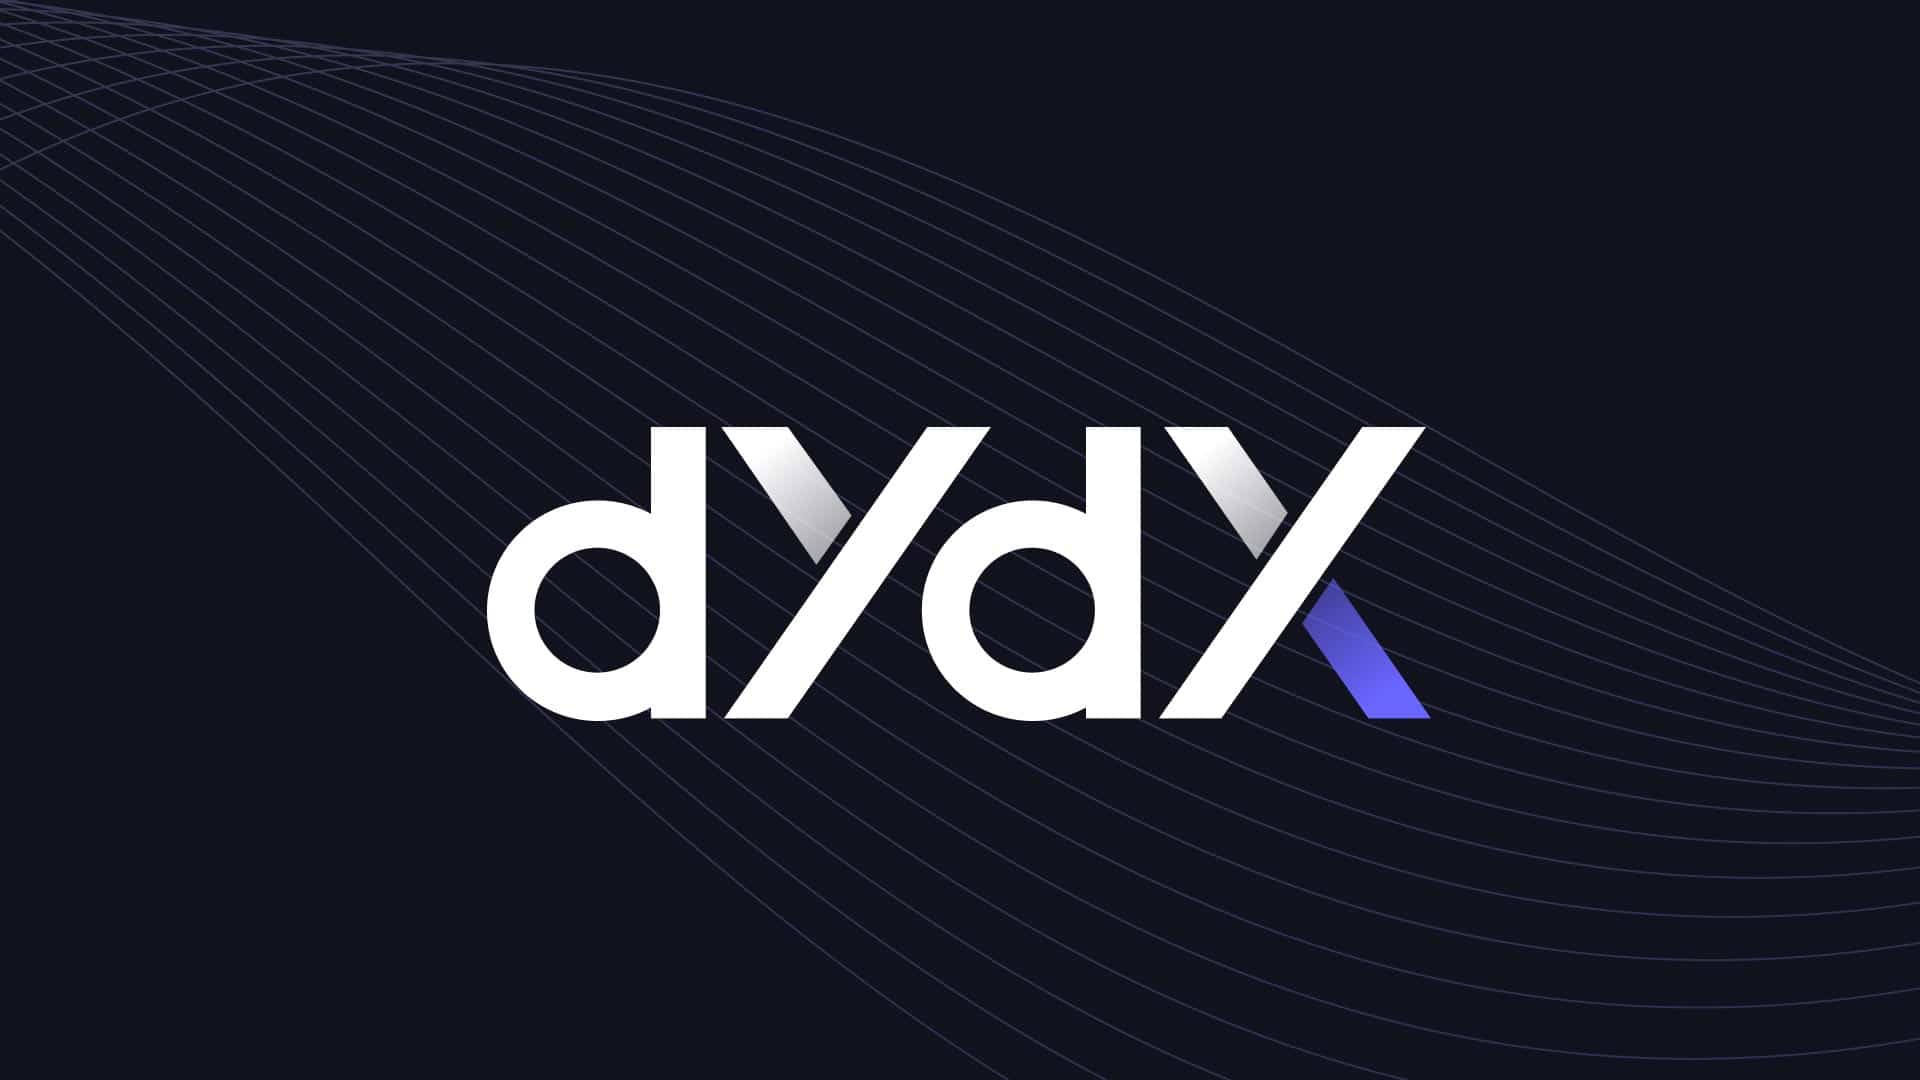 dydx